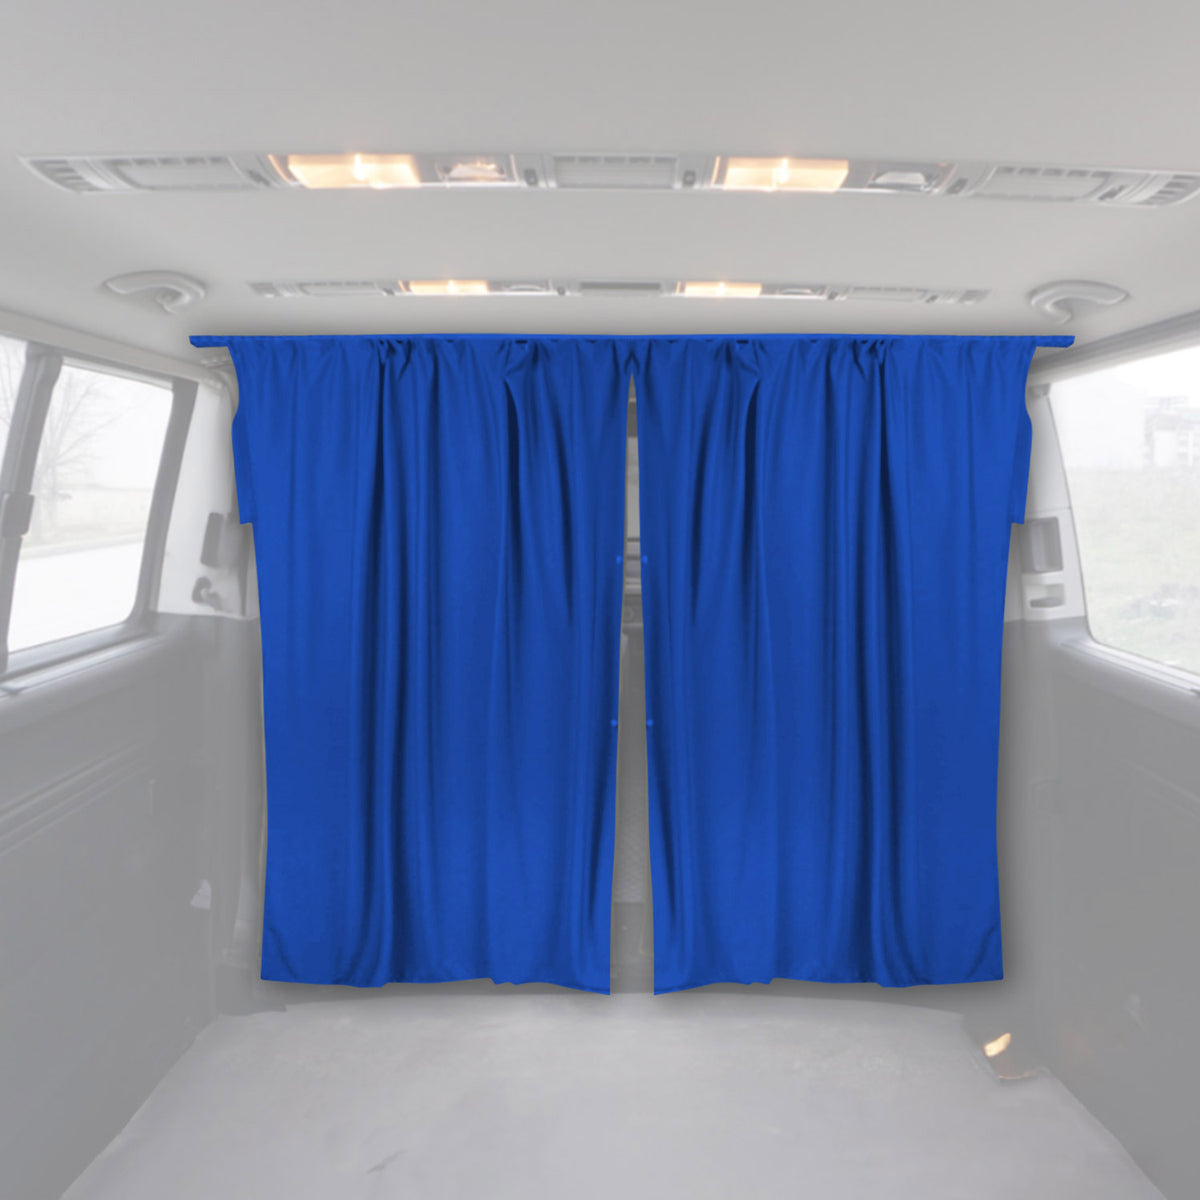 Fahrerhaus Führerhaus Gardinen Sonnenschutz für Iveco Daily H3 Blau 2tlg